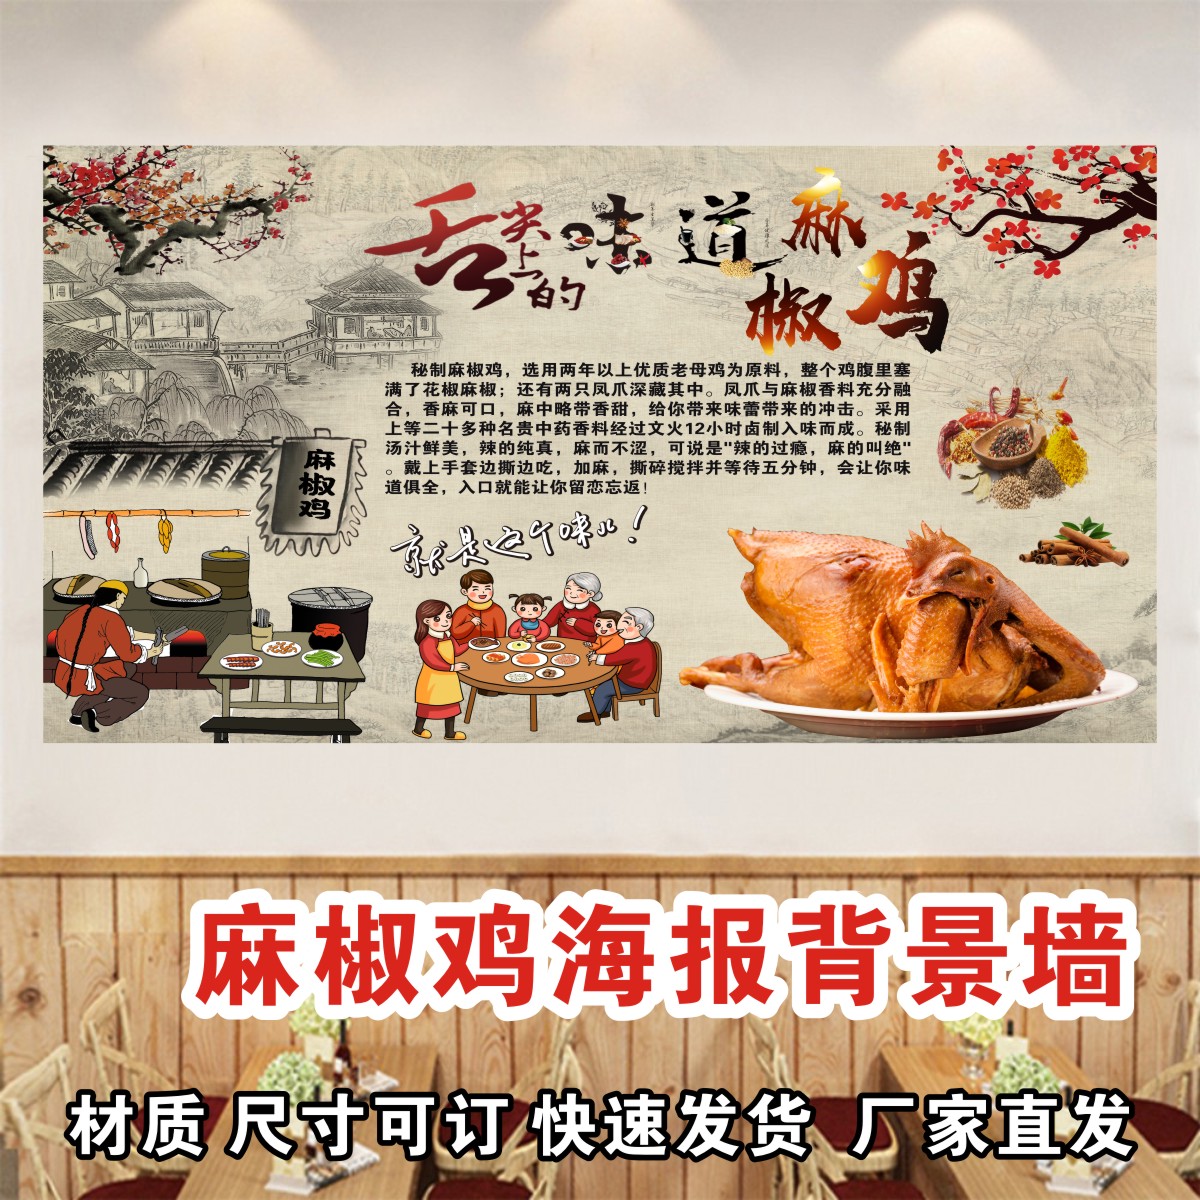 麻椒鸡椒麻鸡装饰壁画餐厅小吃店广告贴纸海报设计制作背胶墙画